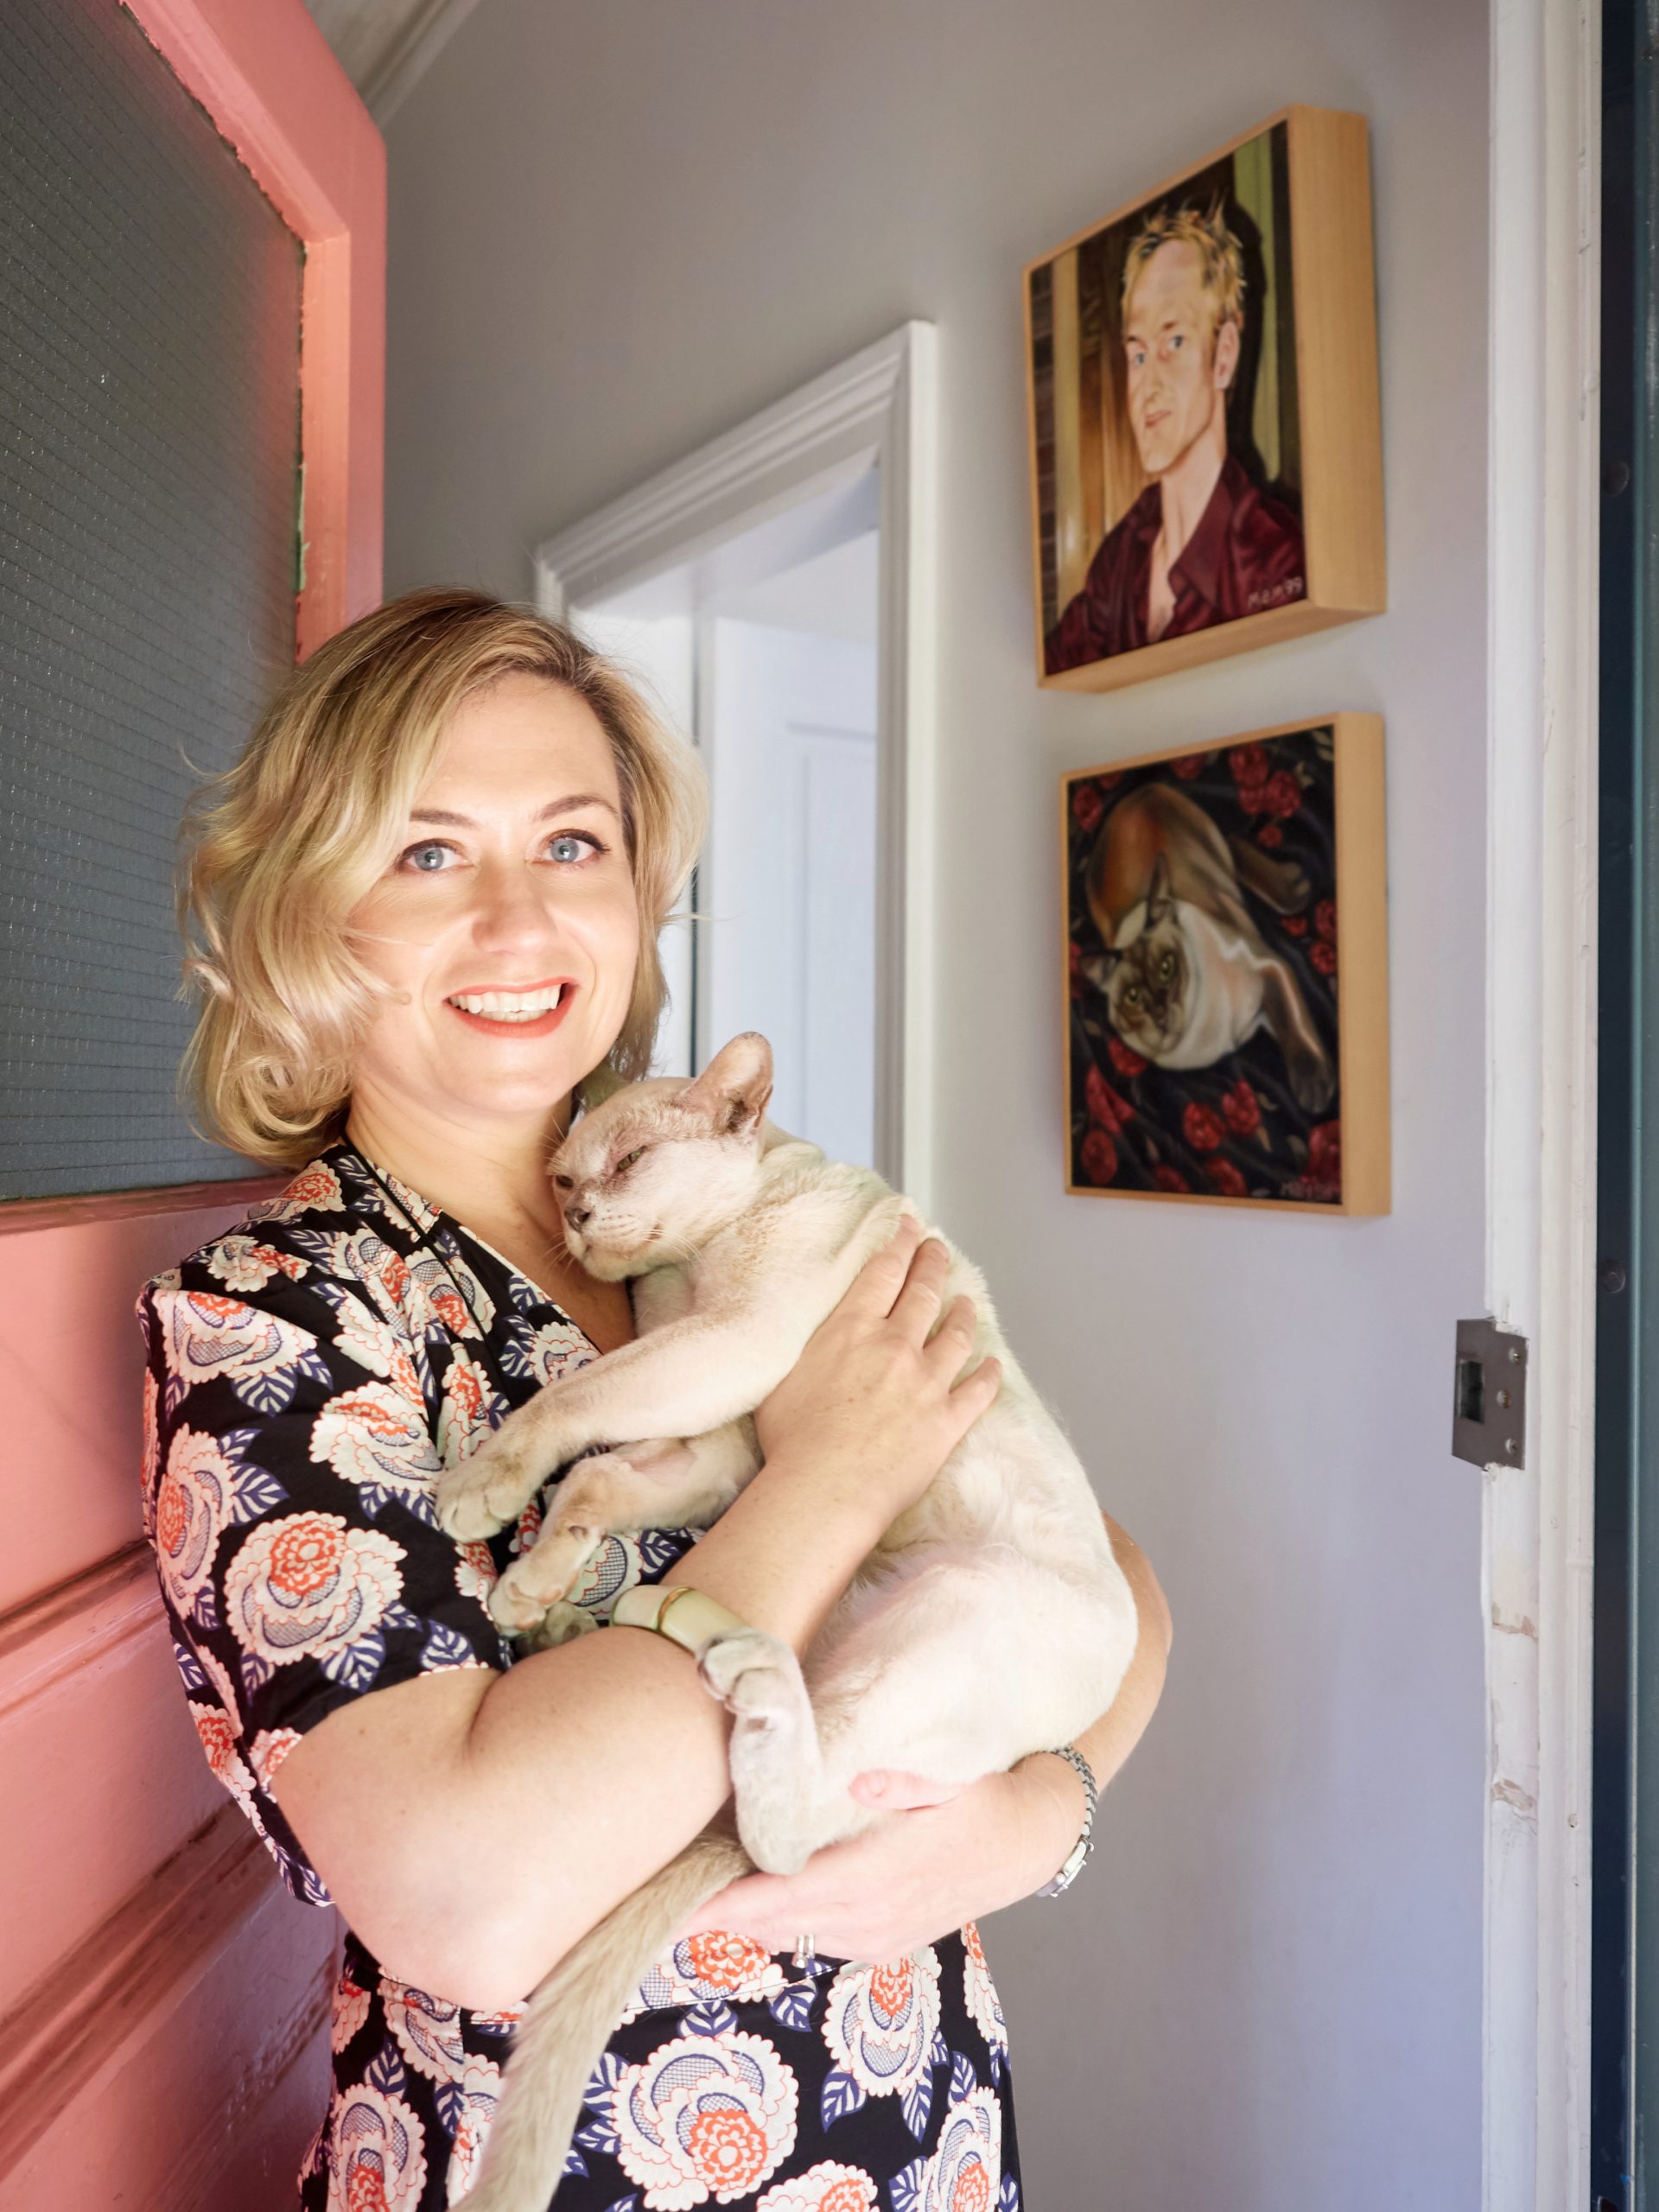 Sally in front of her millenium pink front door holding Rupert the cat